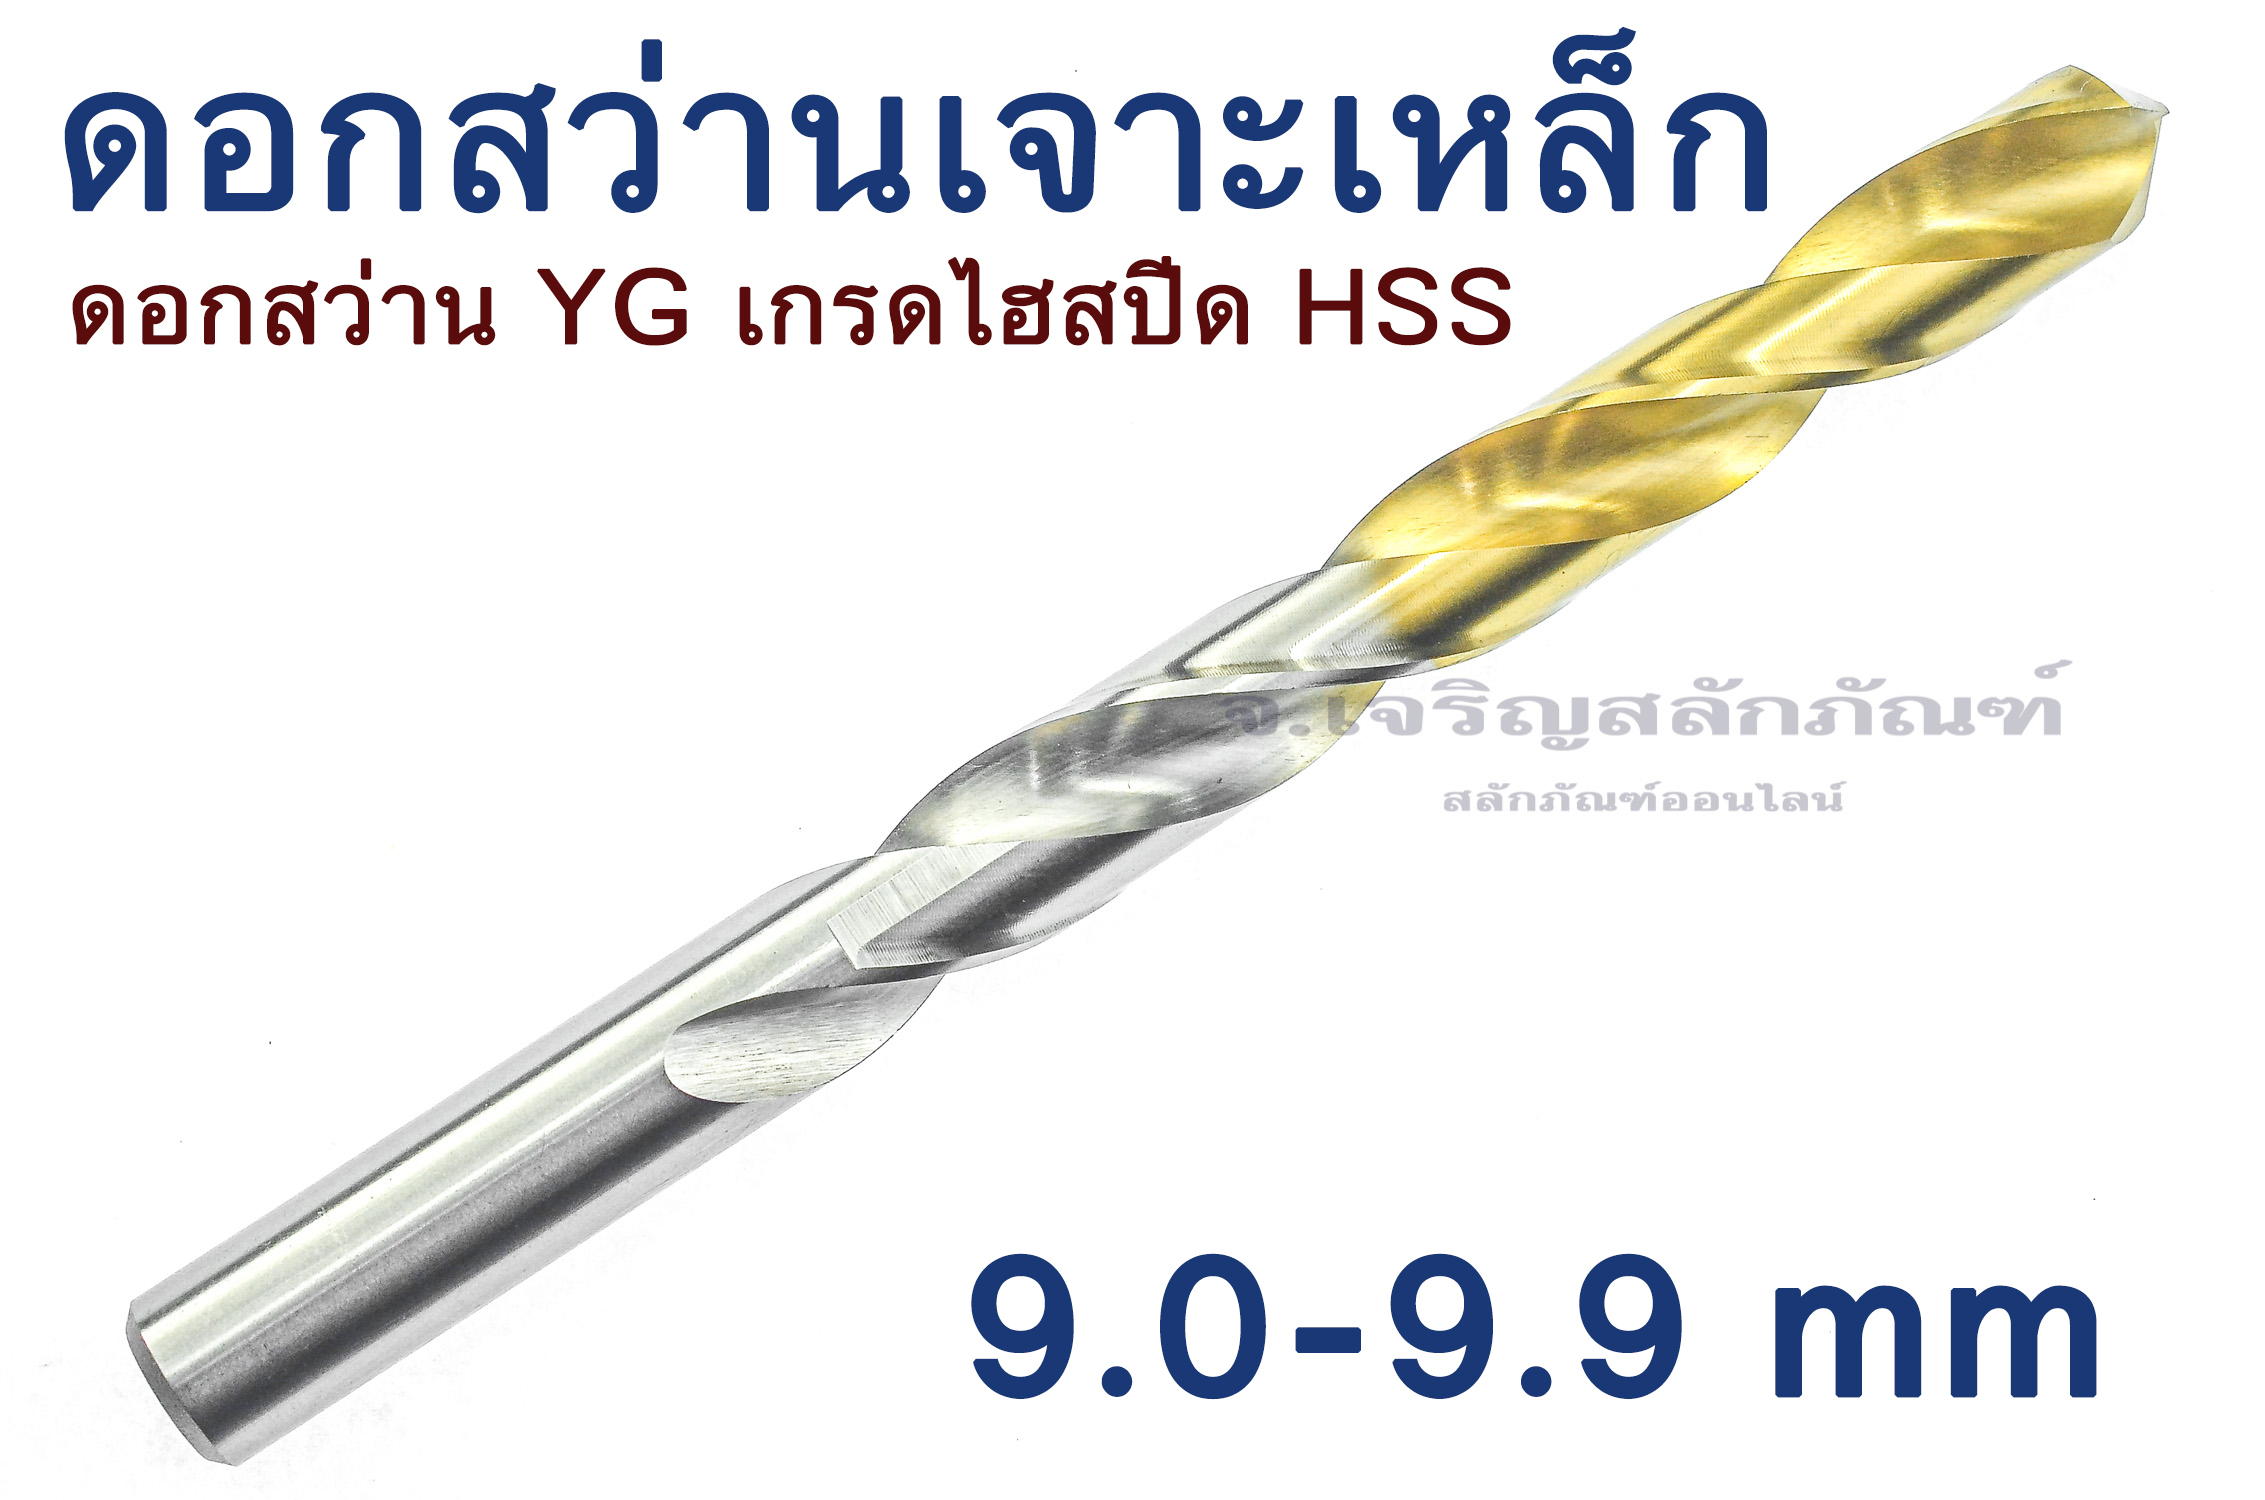 ดอกสว่าน YG ดอกสว่านเจาะเหล็ก 9.0 9.1 9.2 9.3 9.4 9.5 9.6 9.7 9.8 9.9 mm เจาะเหล็ก เกรดไฮสปีด HSS